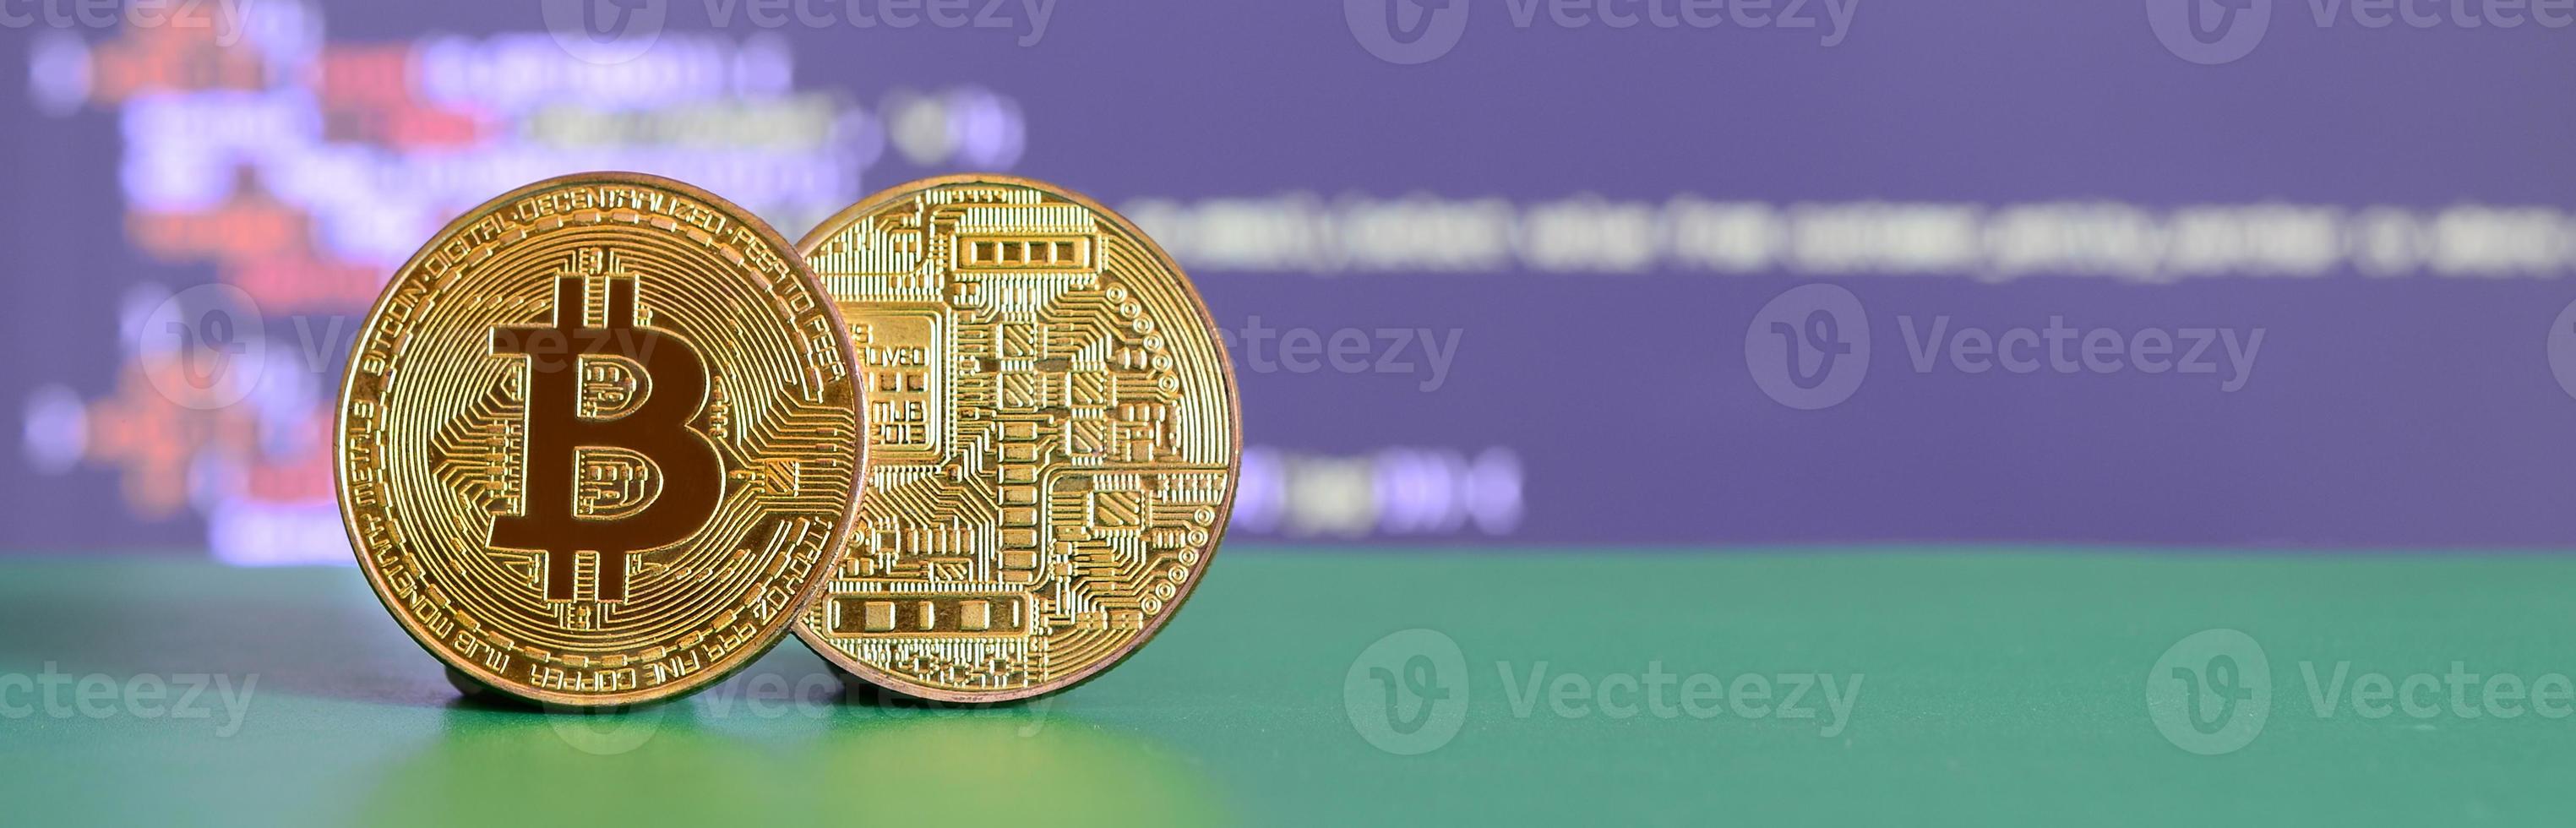 dos bitcoins de oro se encuentran en la superficie verde en el fondo de la pantalla, que muestra el proceso de extracción de la moneda criptográfica foto